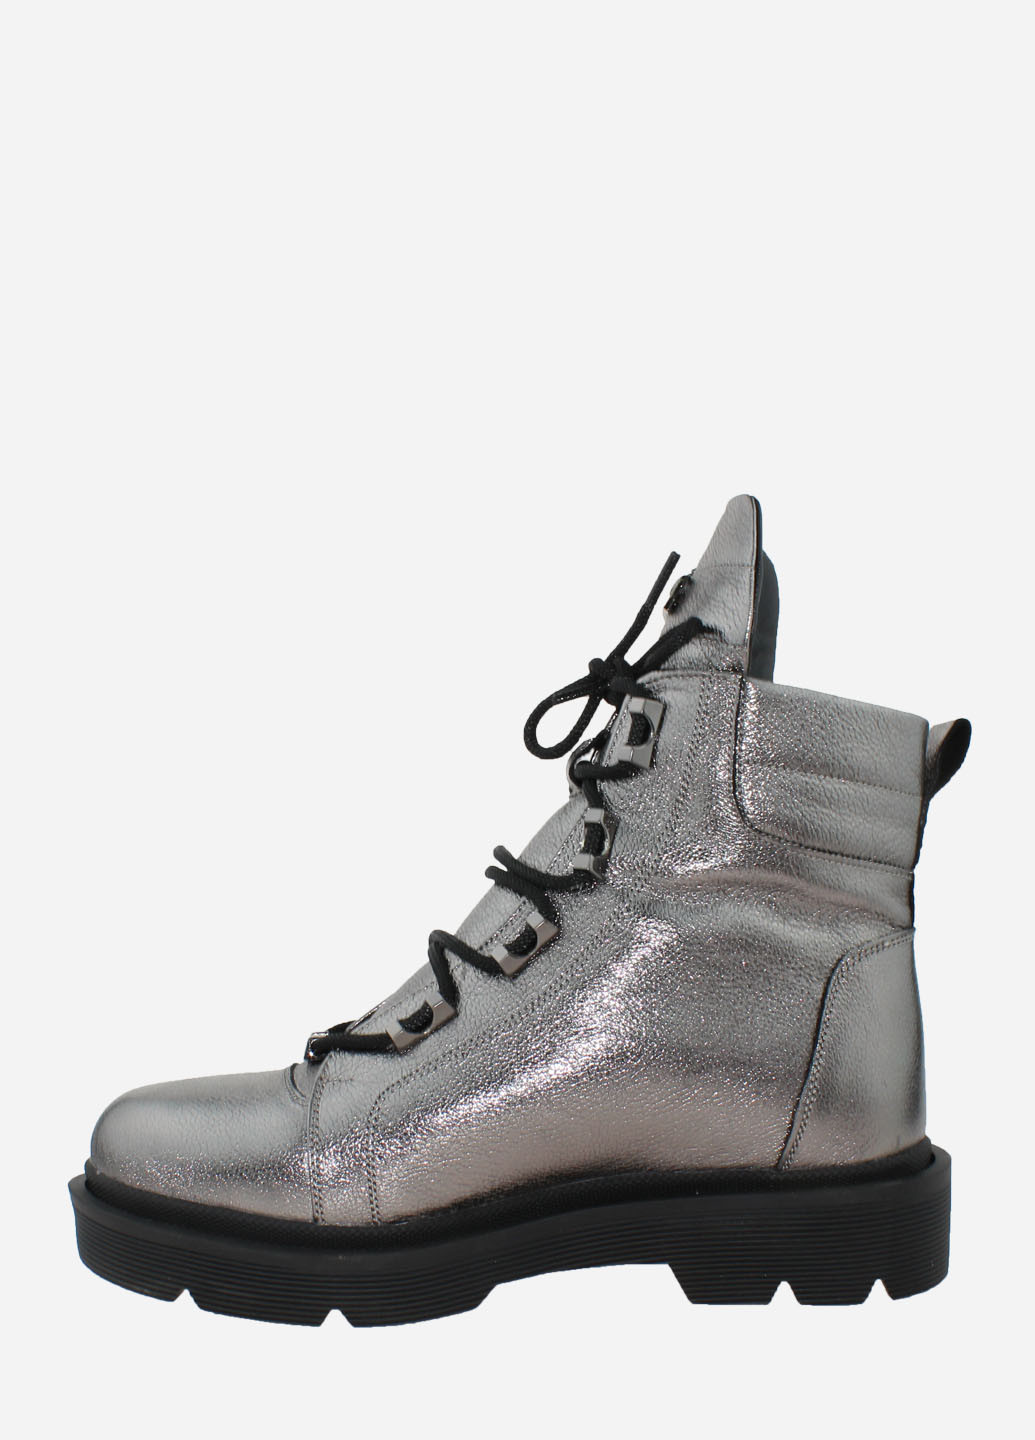 Зимние ботинки re2473 серебро El passo